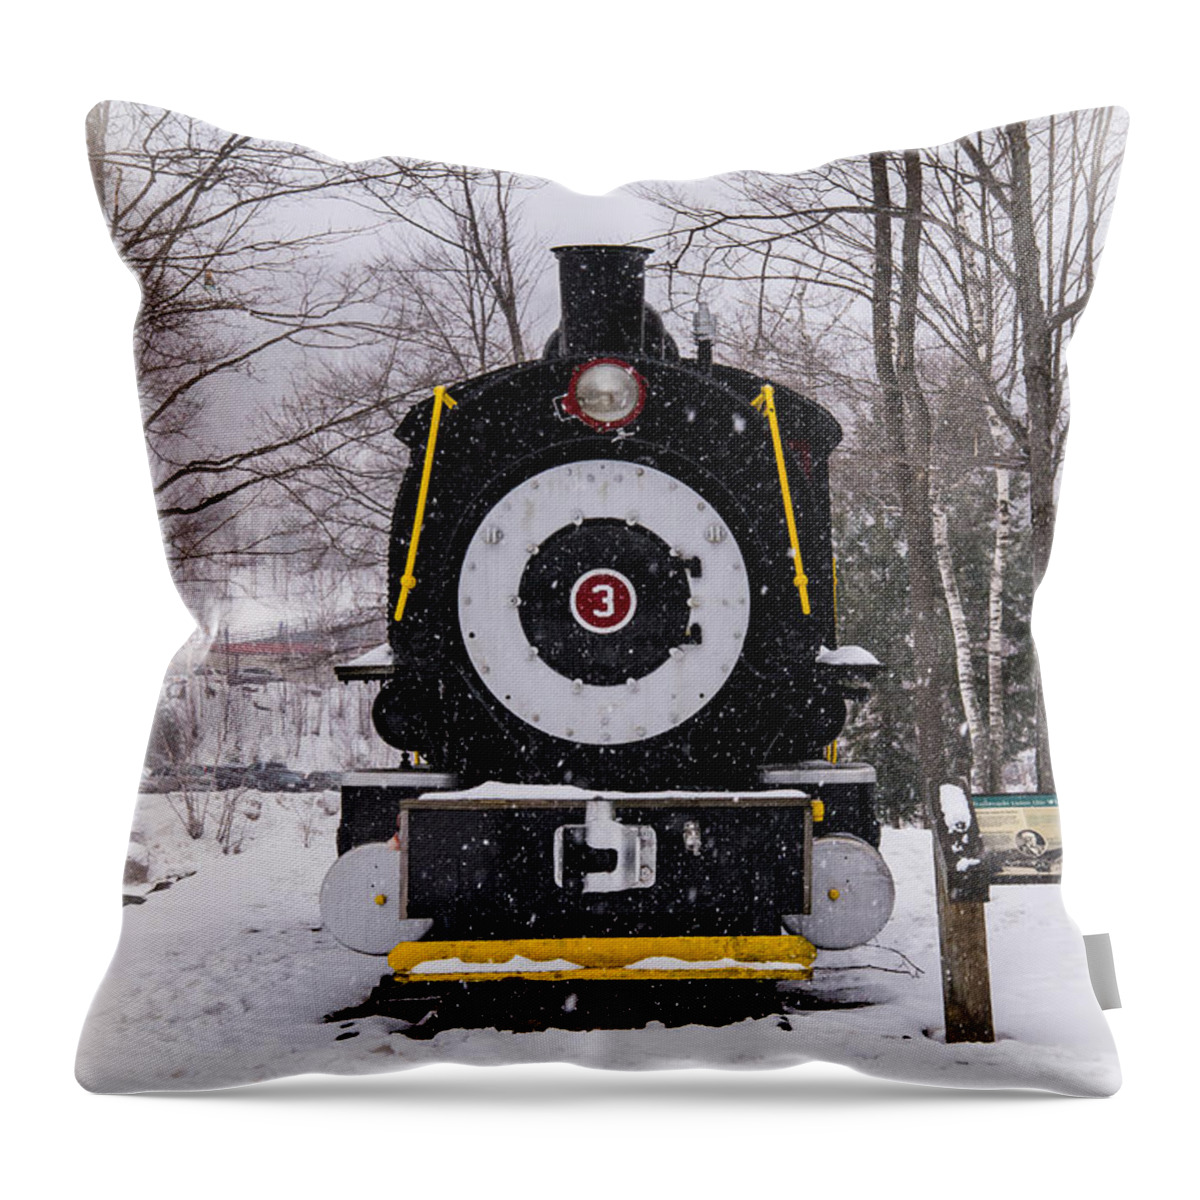 Train Throw Pillow featuring the photograph Train by Glenn Gordon